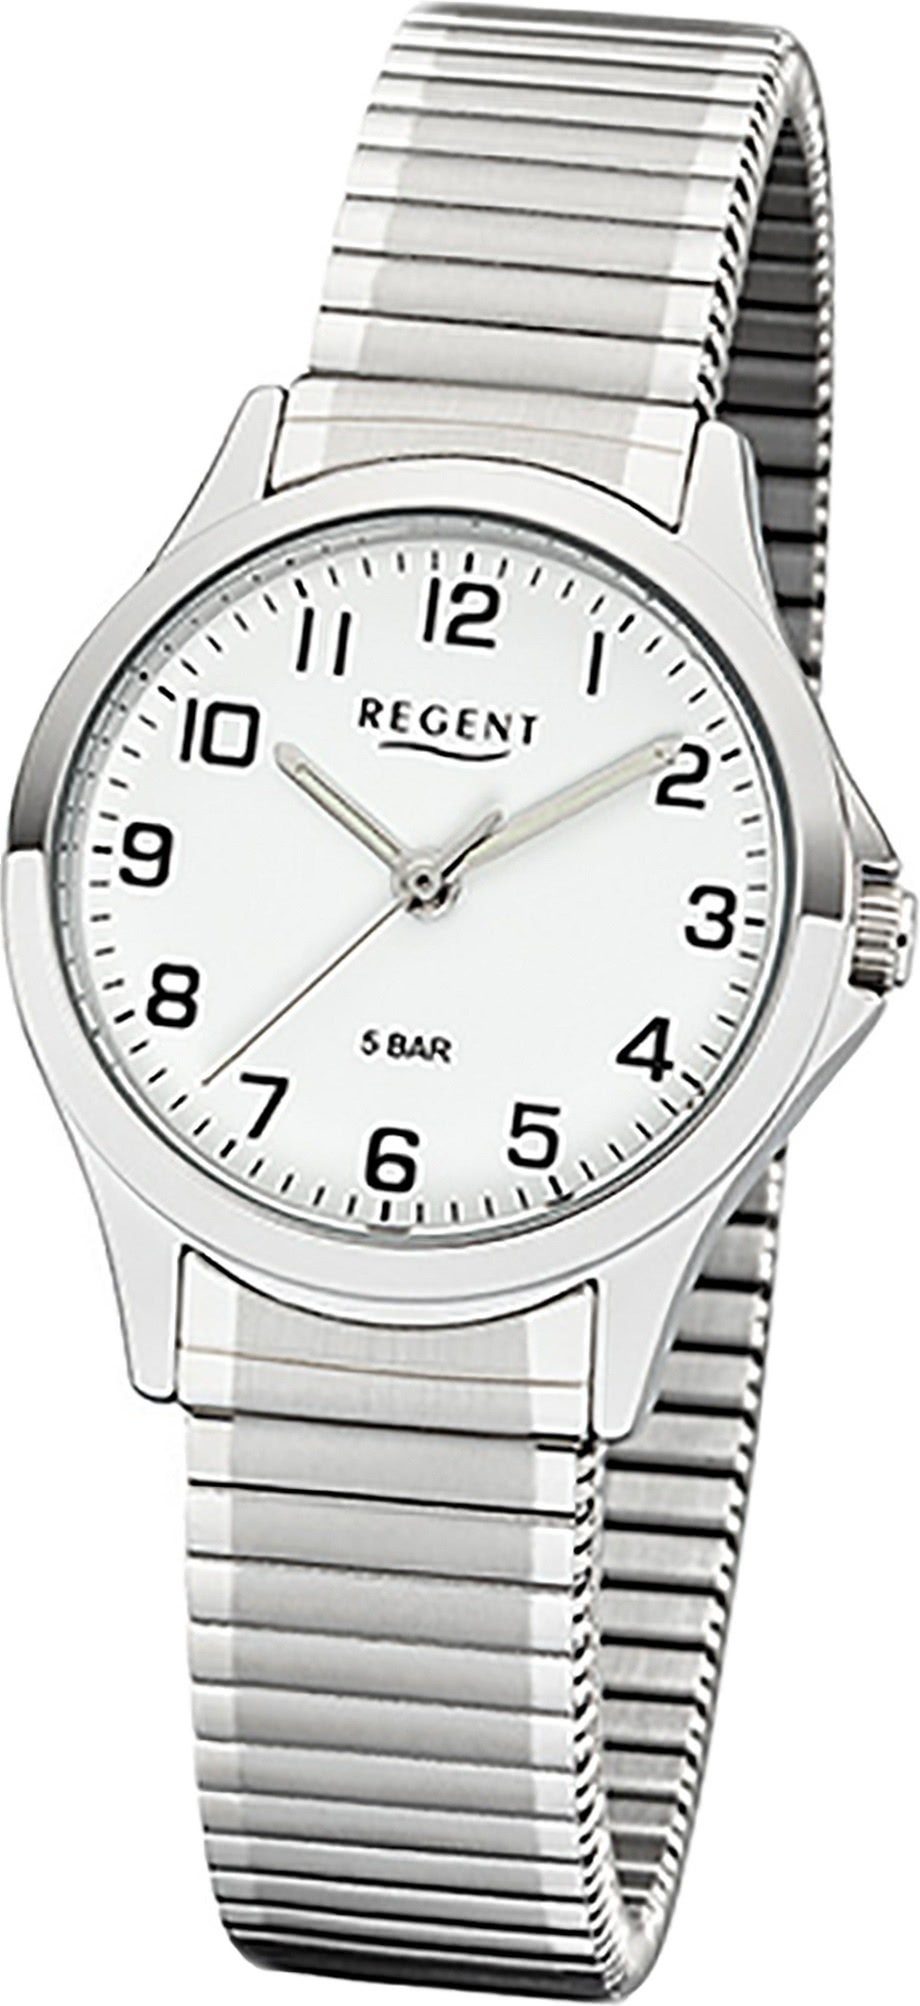 Regent Quarzuhr Regent Metall Damen Uhr 2242424 Analog, Damenuhr Metallarmband silber, rundes Gehäuse, klein (ca. 29mm)